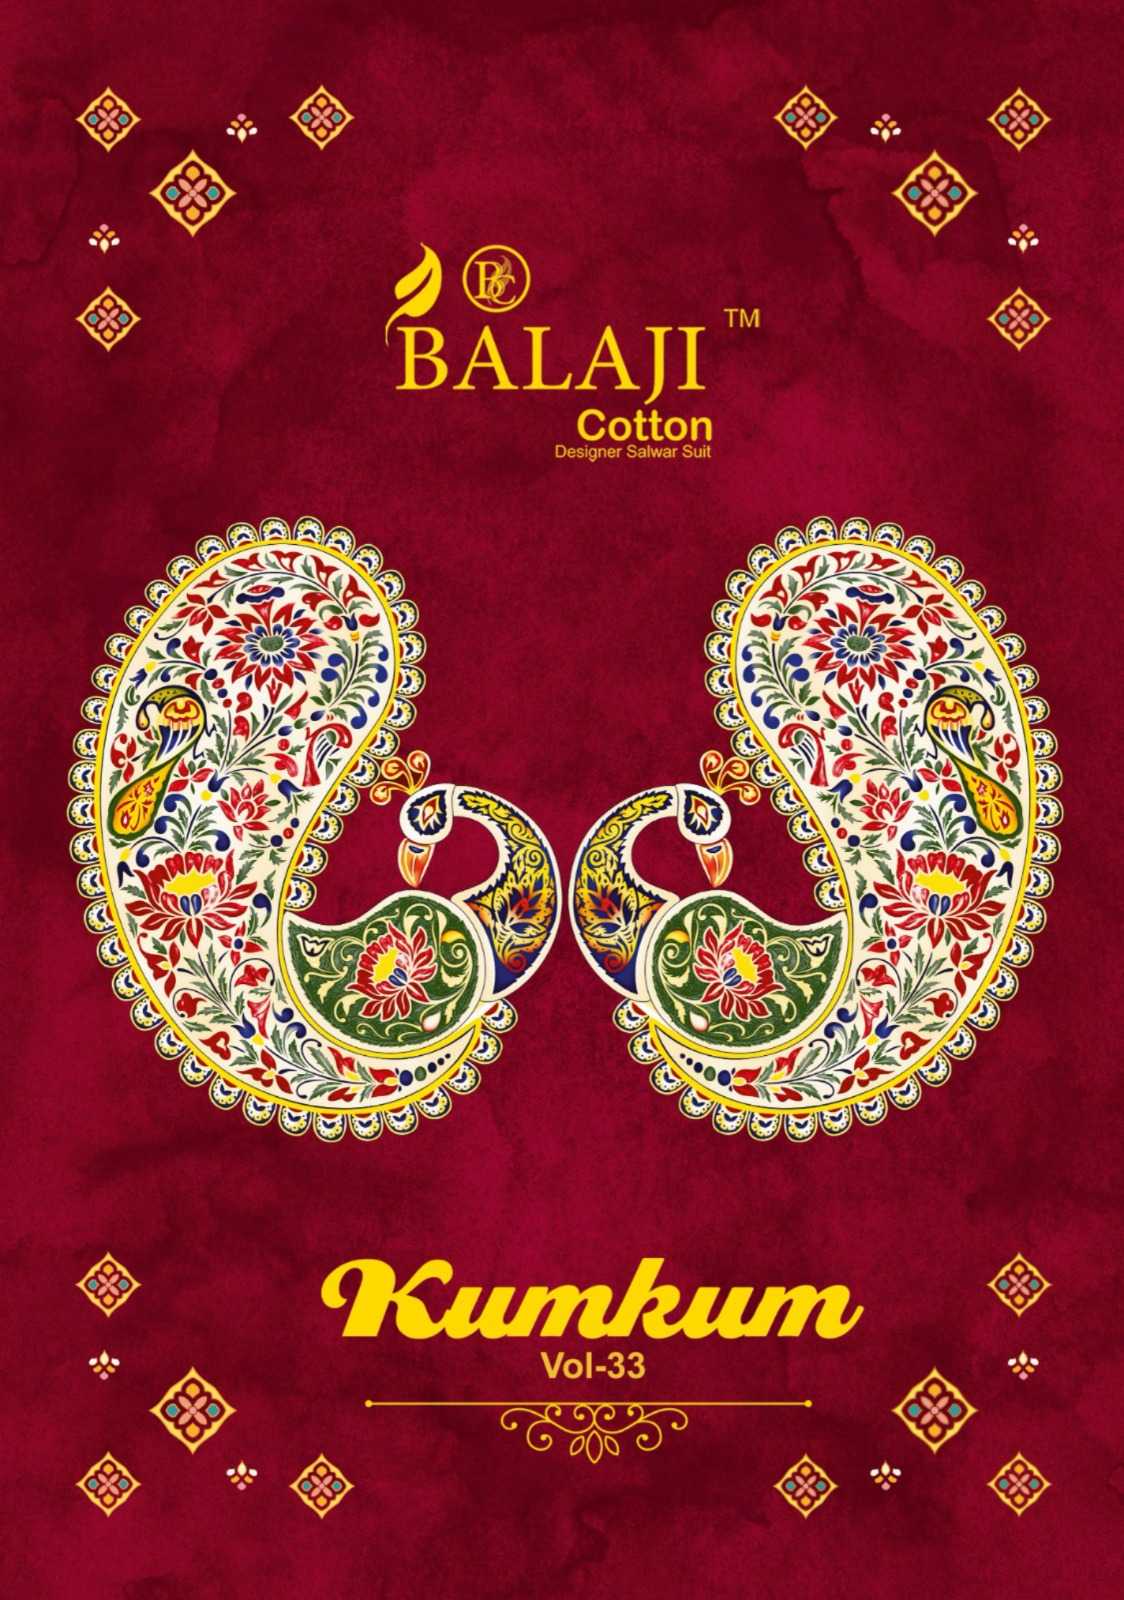 balaji cotton kumkum vol 33 fullstitch comfortable wear kurti pant dupatta